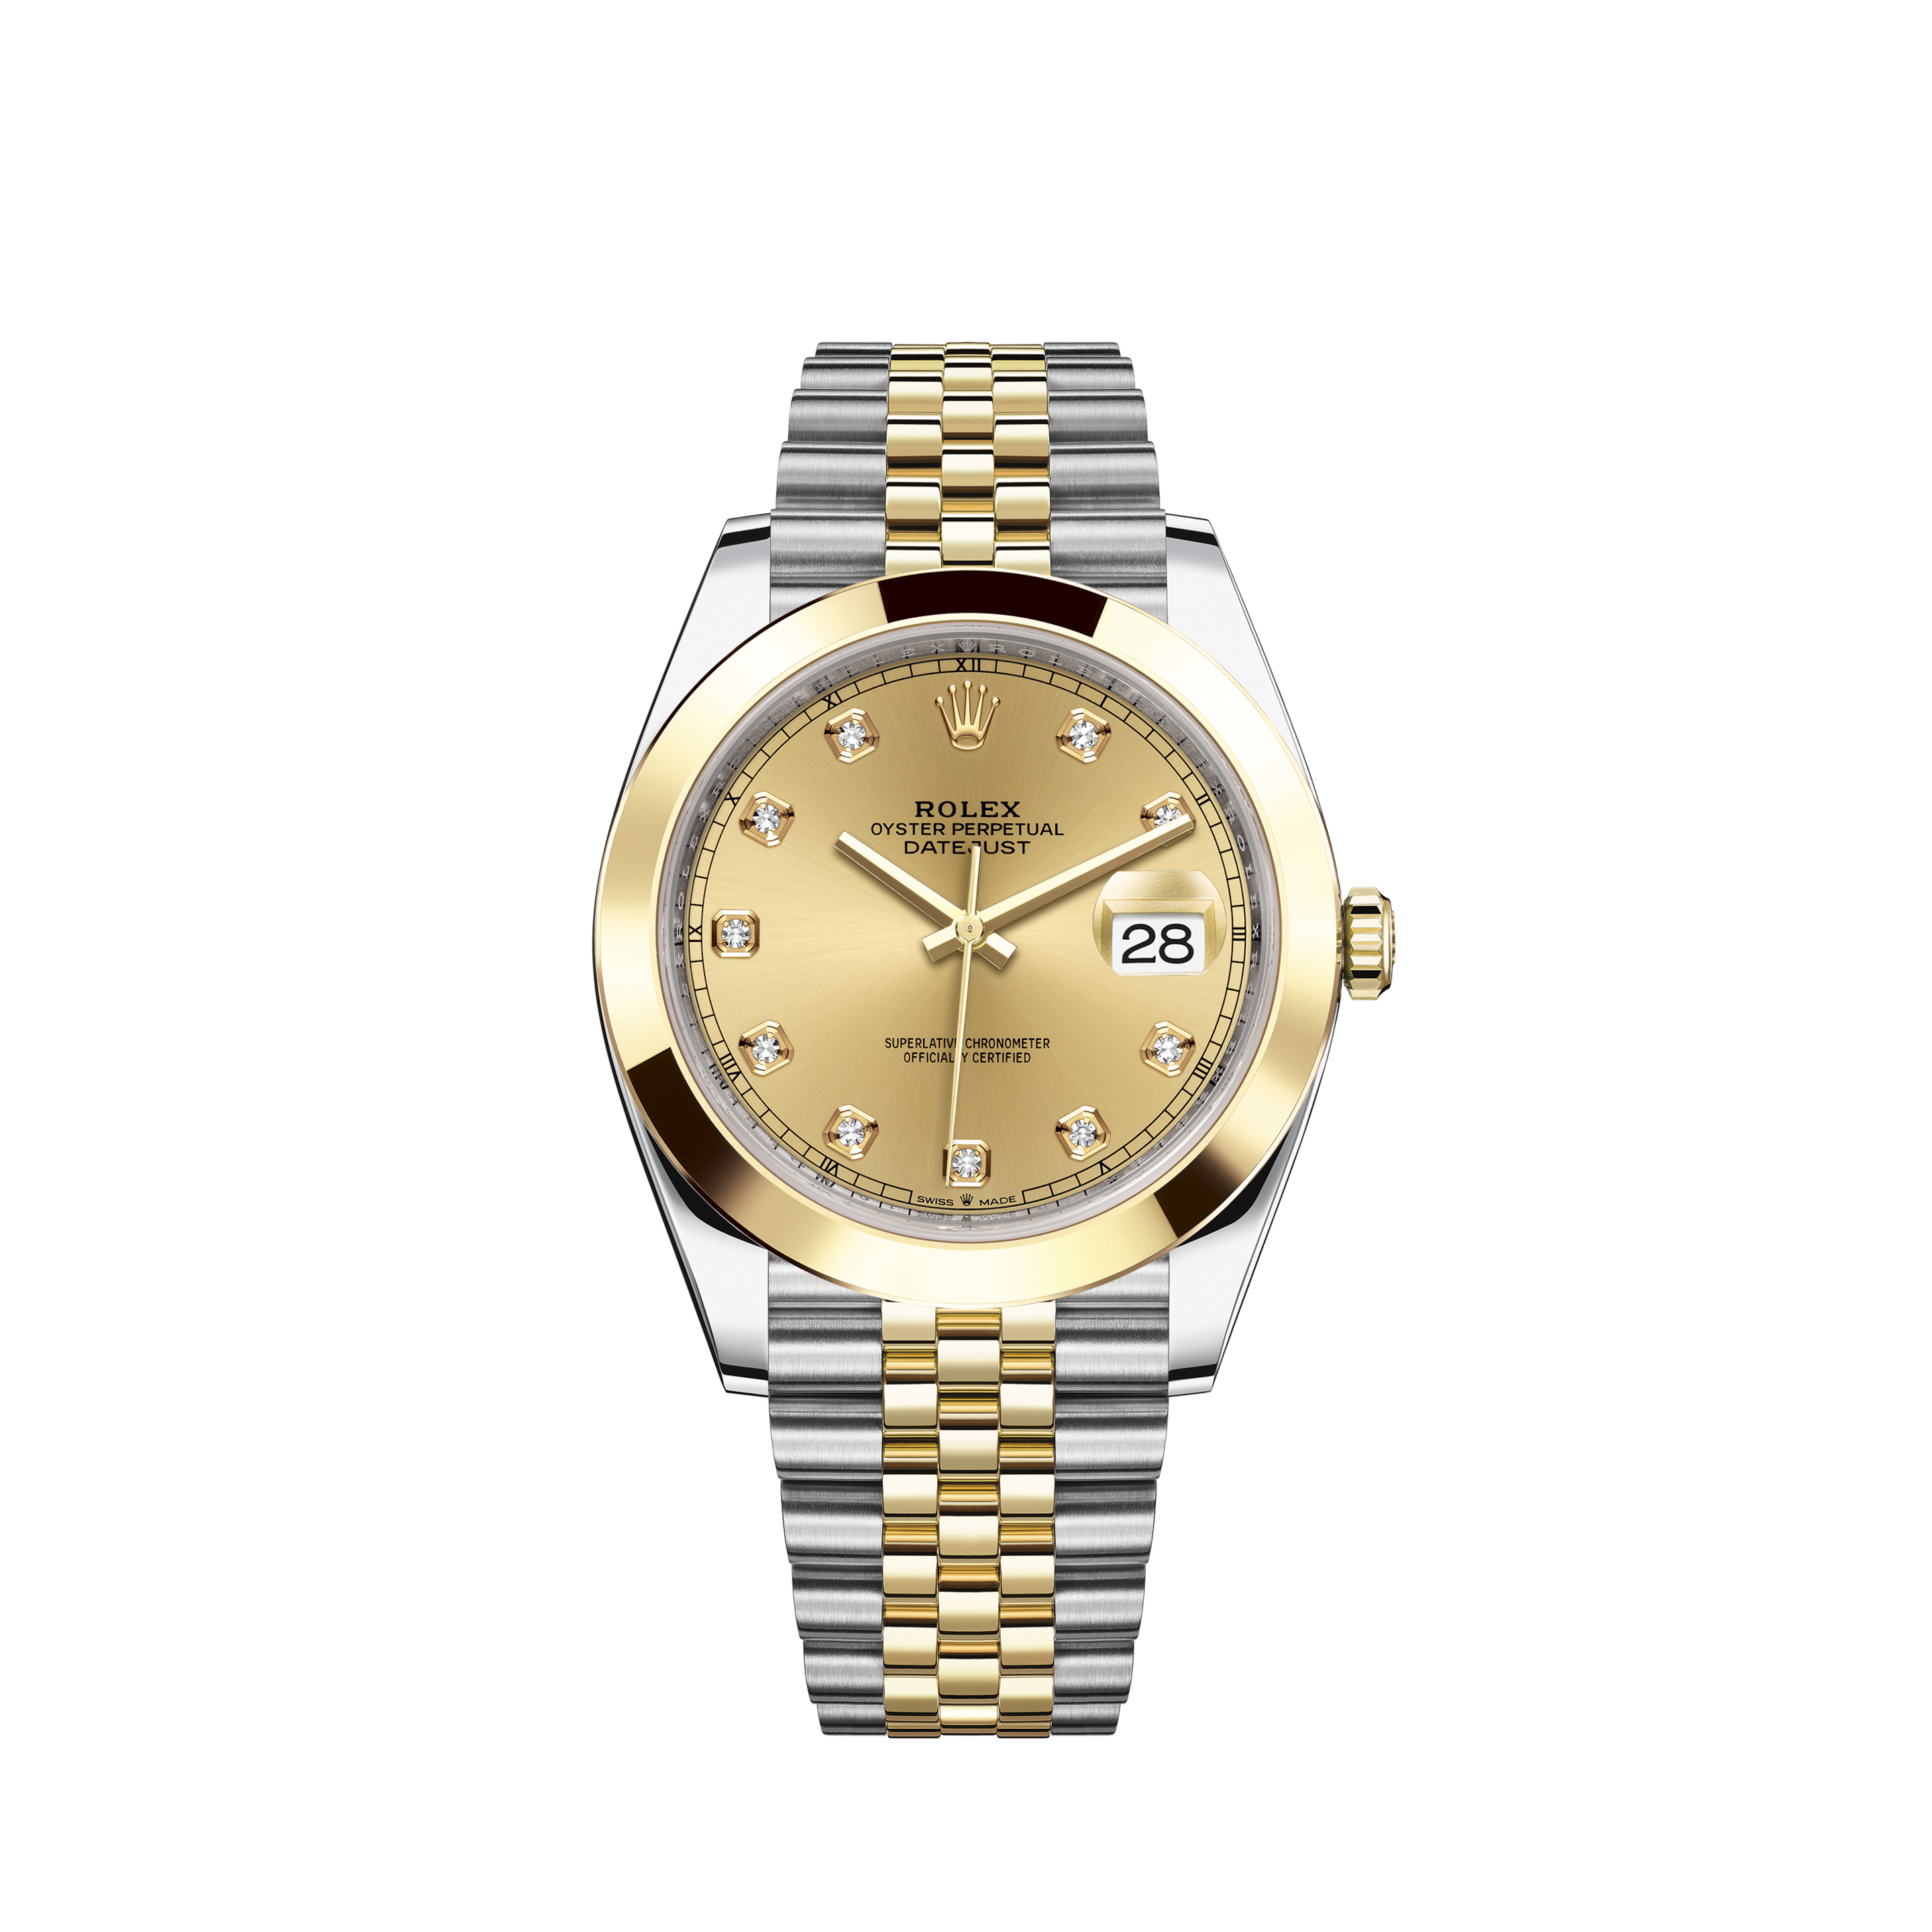 Rolex Datejust 1601 Mens Watch